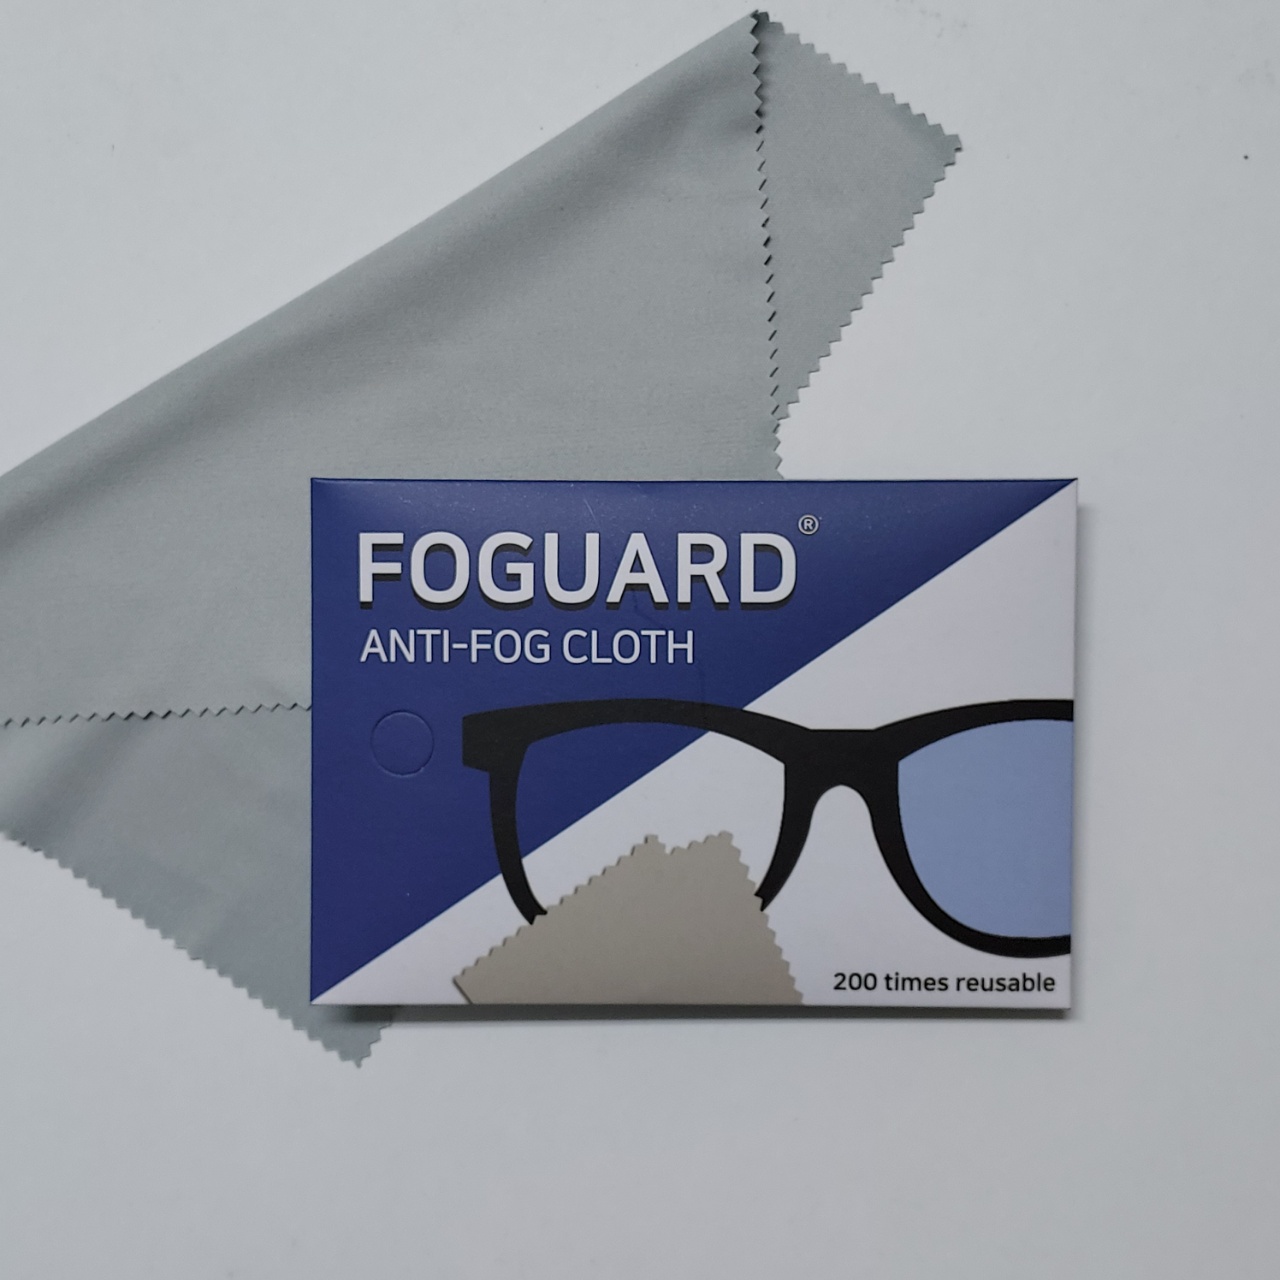 FOGUARD Anti-Fog Cloth